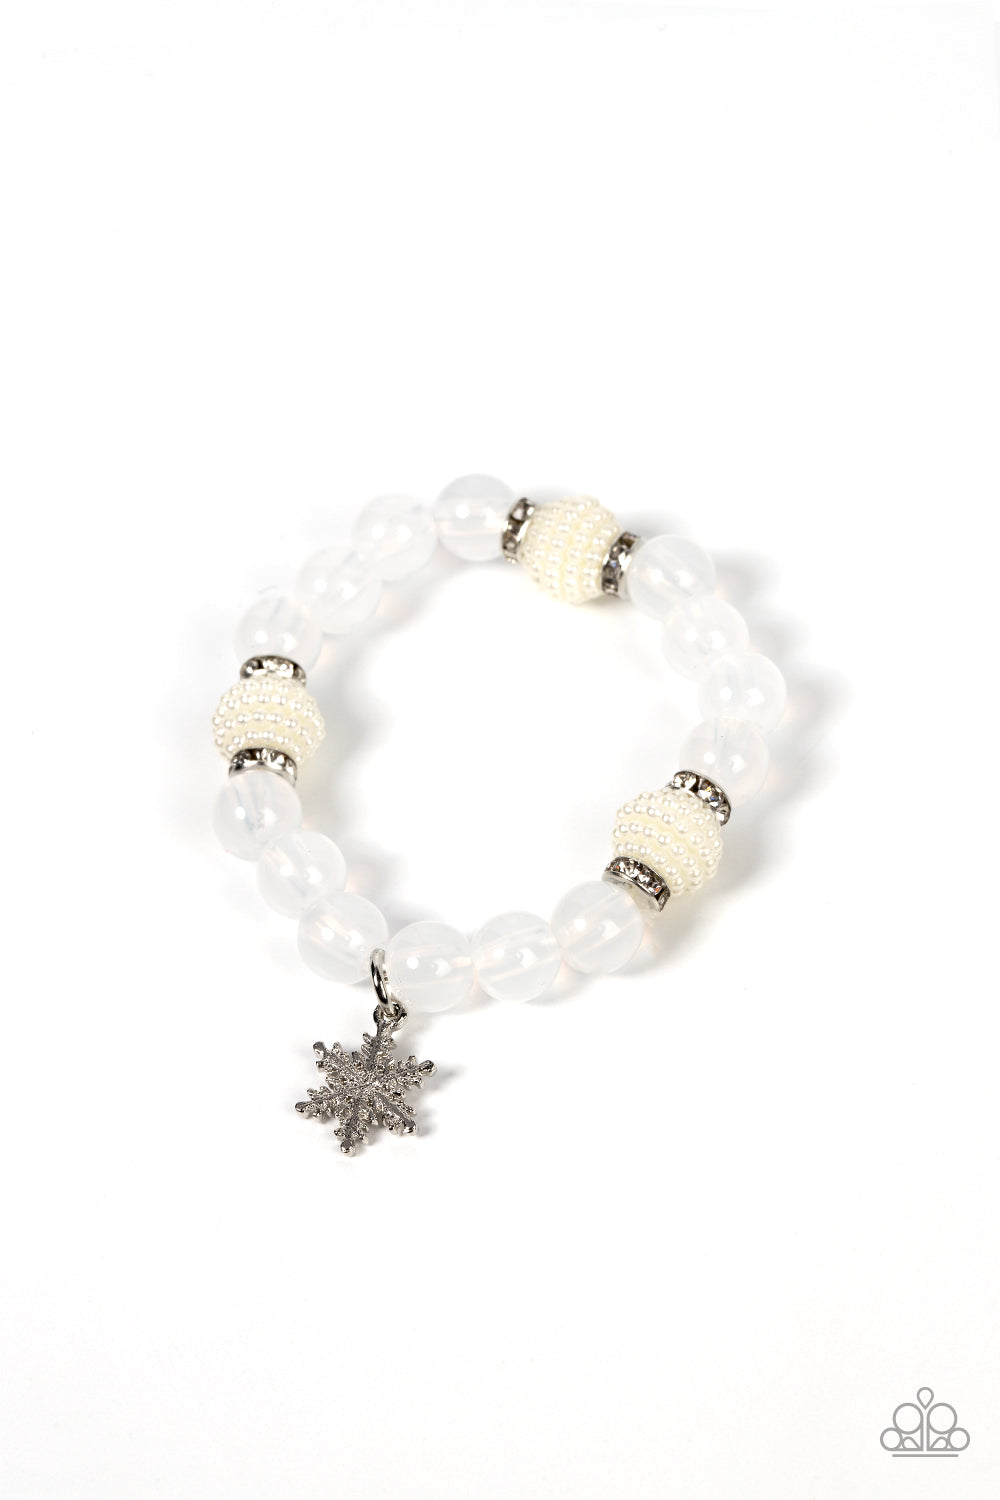 Starlet Shimmer Winter White Snowflake Bracelet ♥ Starlet Shimmer Bracelets ♥